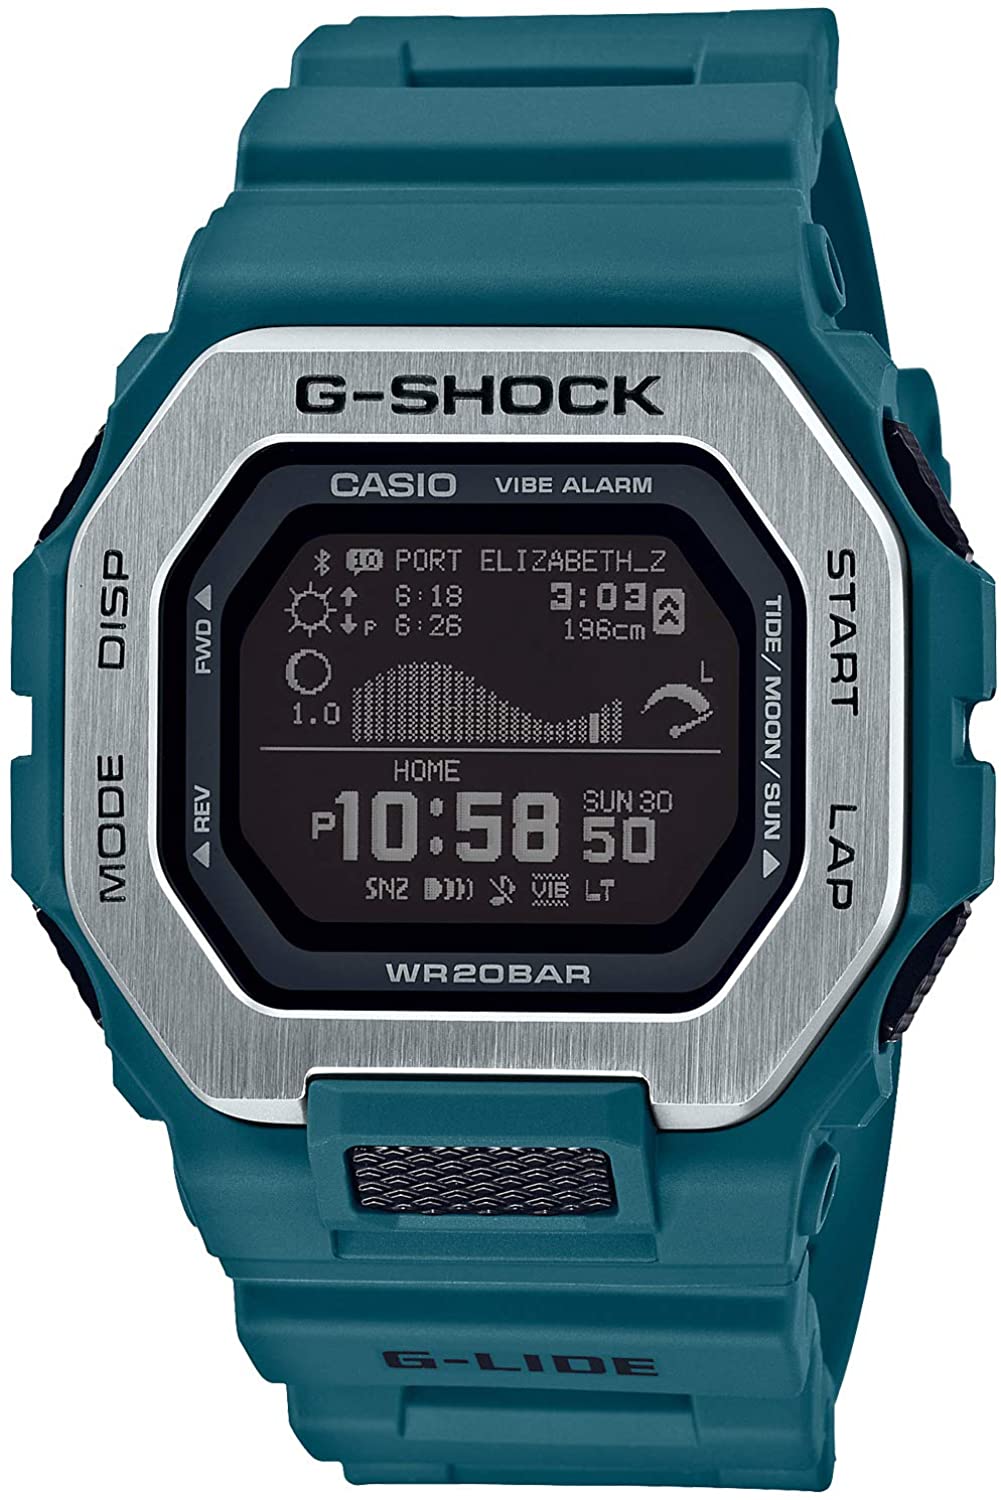 ジーショック(G-SHOCK) G-SHOCK G-LIDE GBX-100-2JF | ブランド腕時計の正規販売店 ...